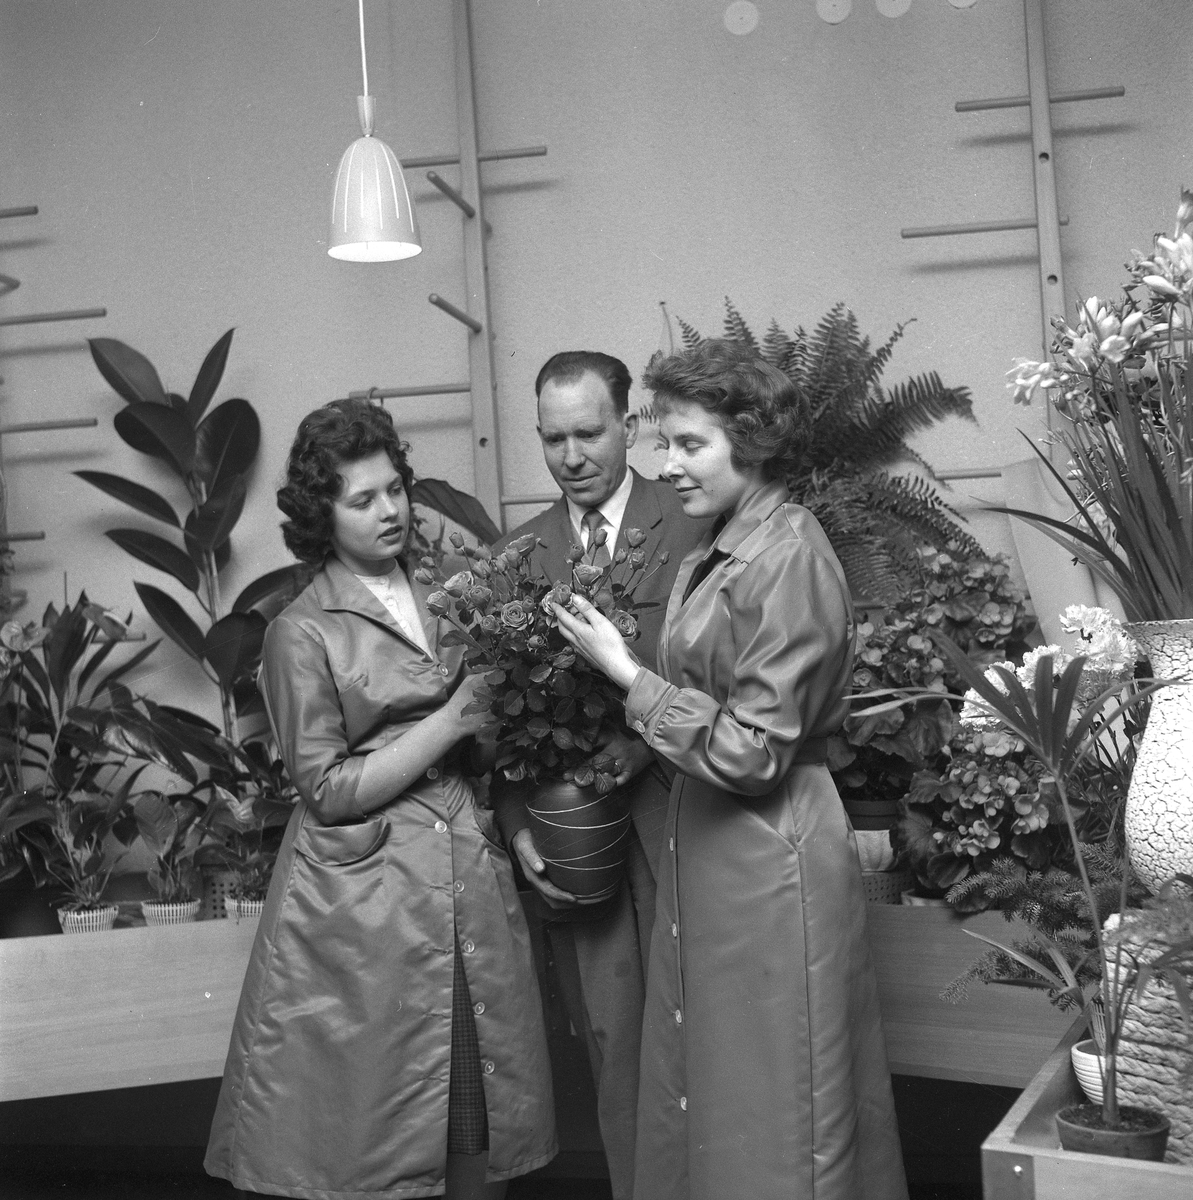 Blomsterhandel på Söder.
31 oktober 1958.